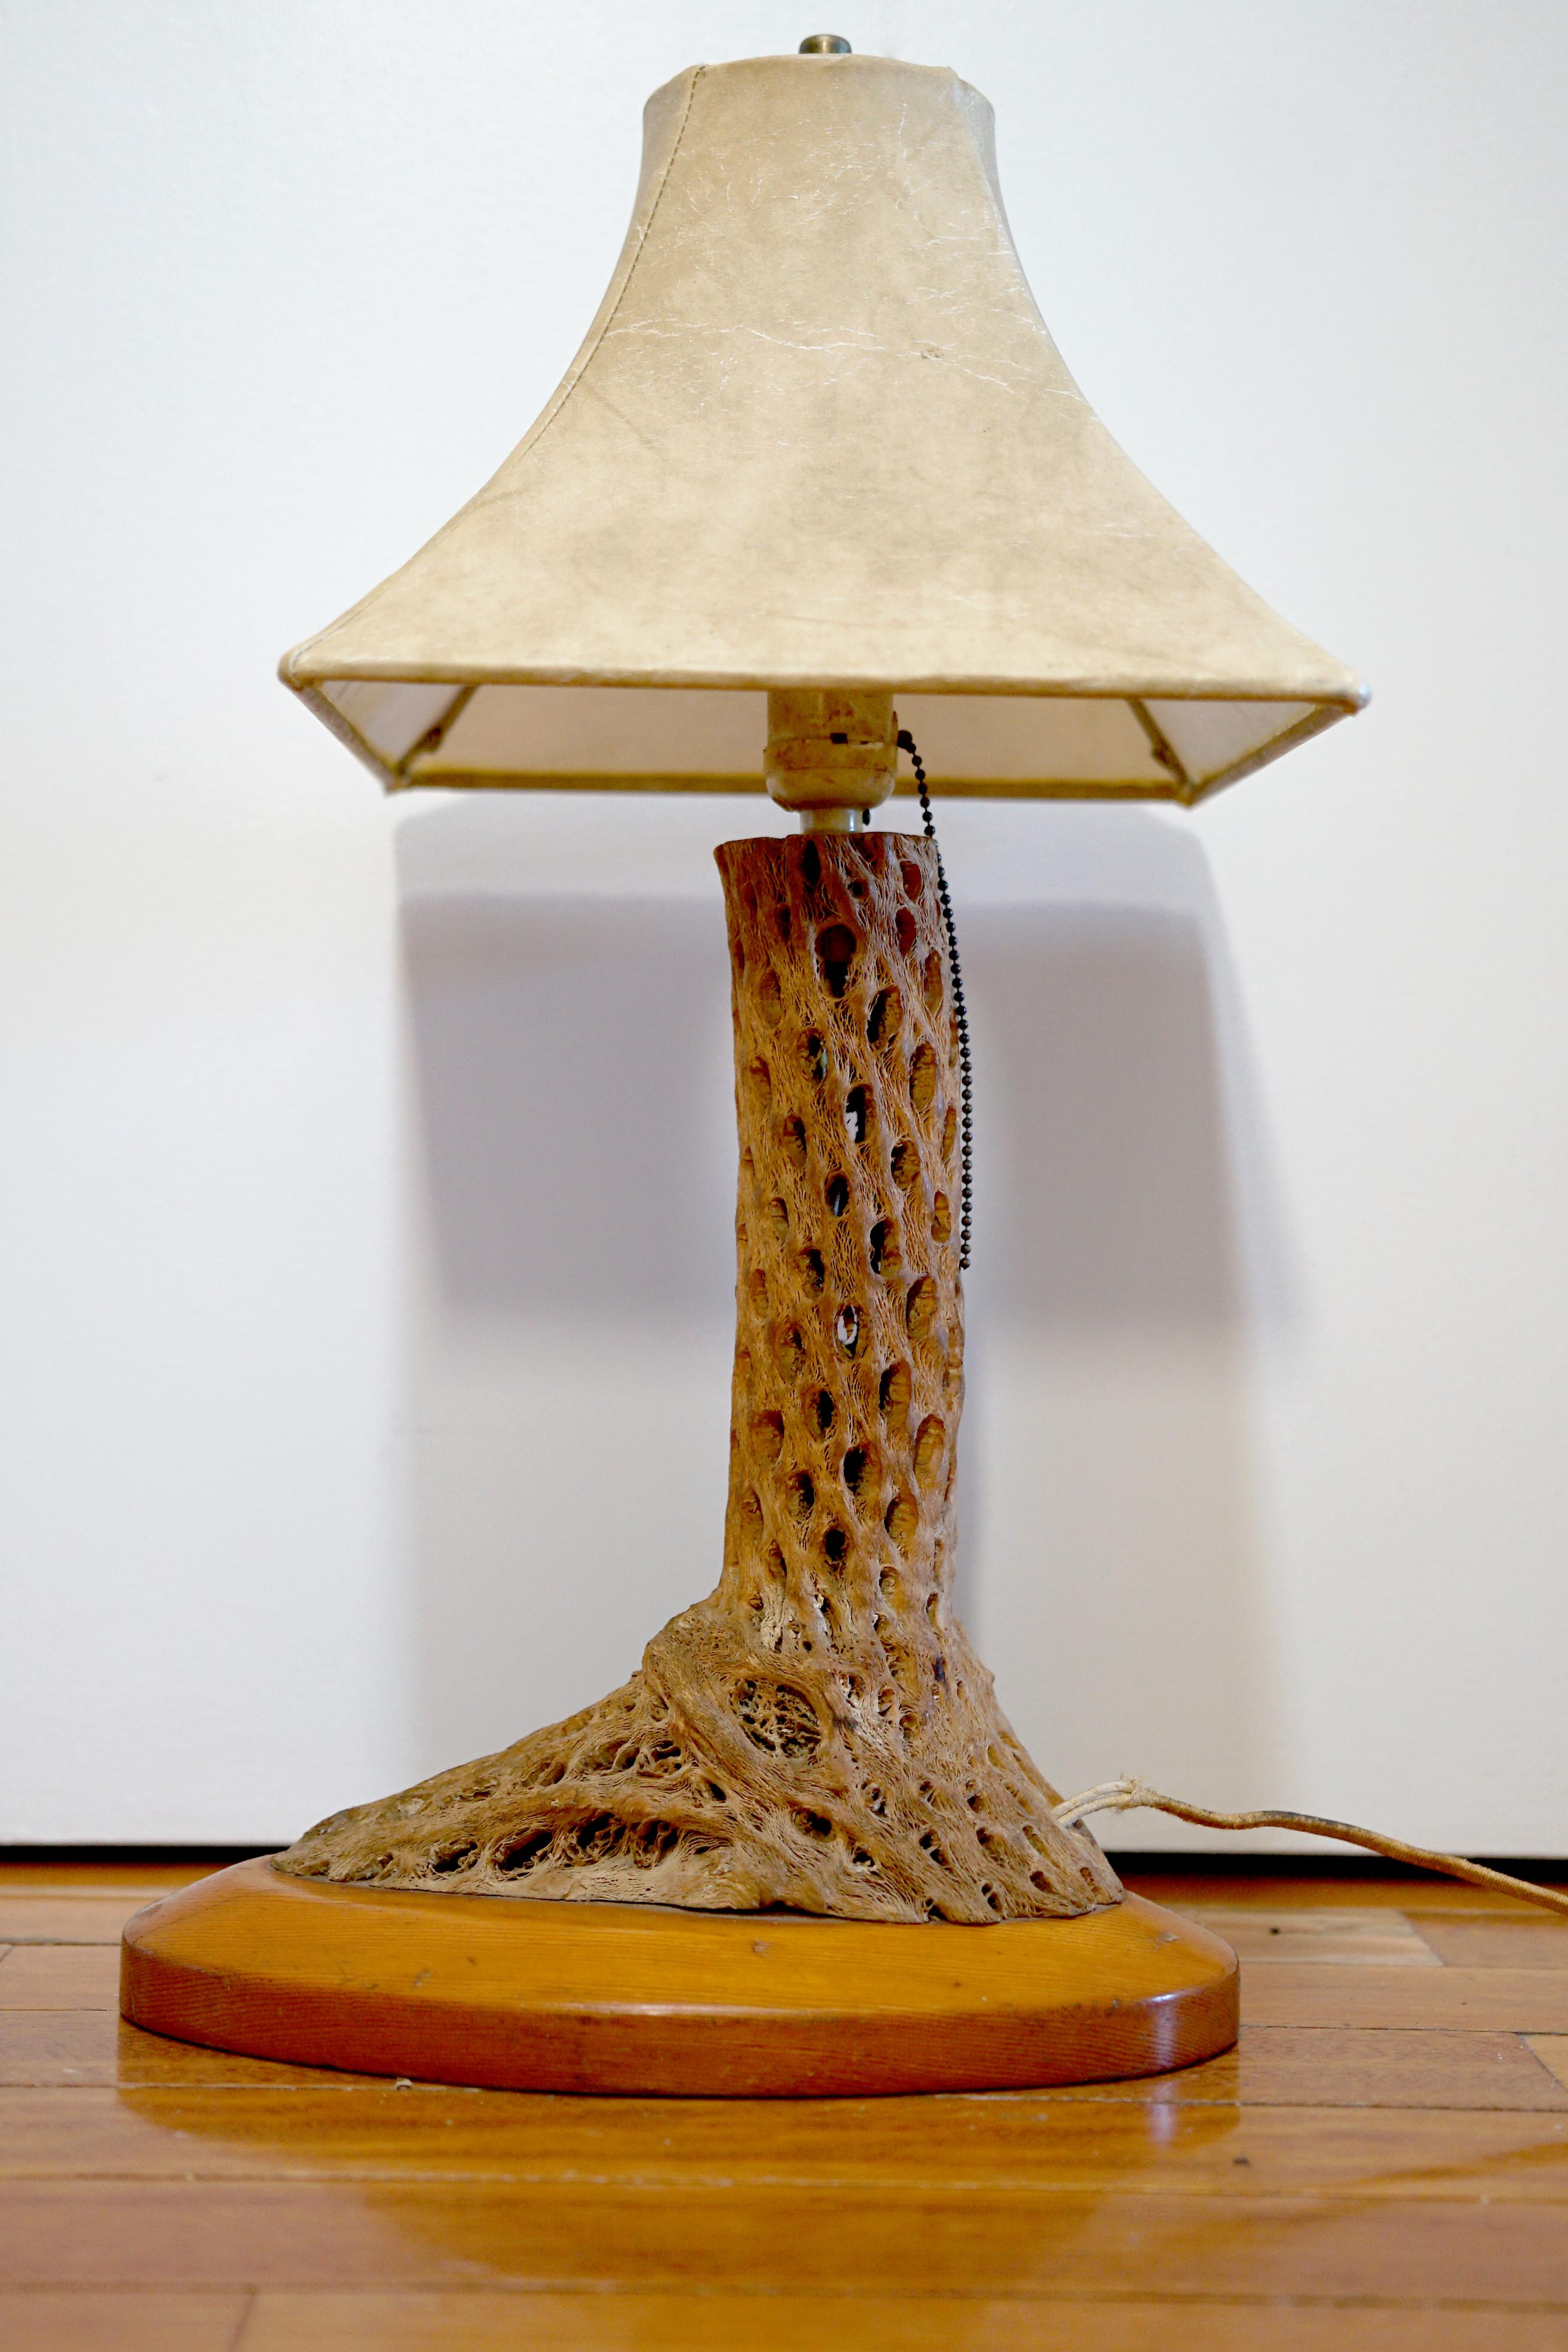 Le look midcentury de cette lampe en bois de cholla et érable crée un moment d'éclairage important. L'ambiance est quelque peu rustique, car la lampe ressemble à un tronc d'arbre. De la base à l'abat-jour en forme de boîte originale, elle offre une